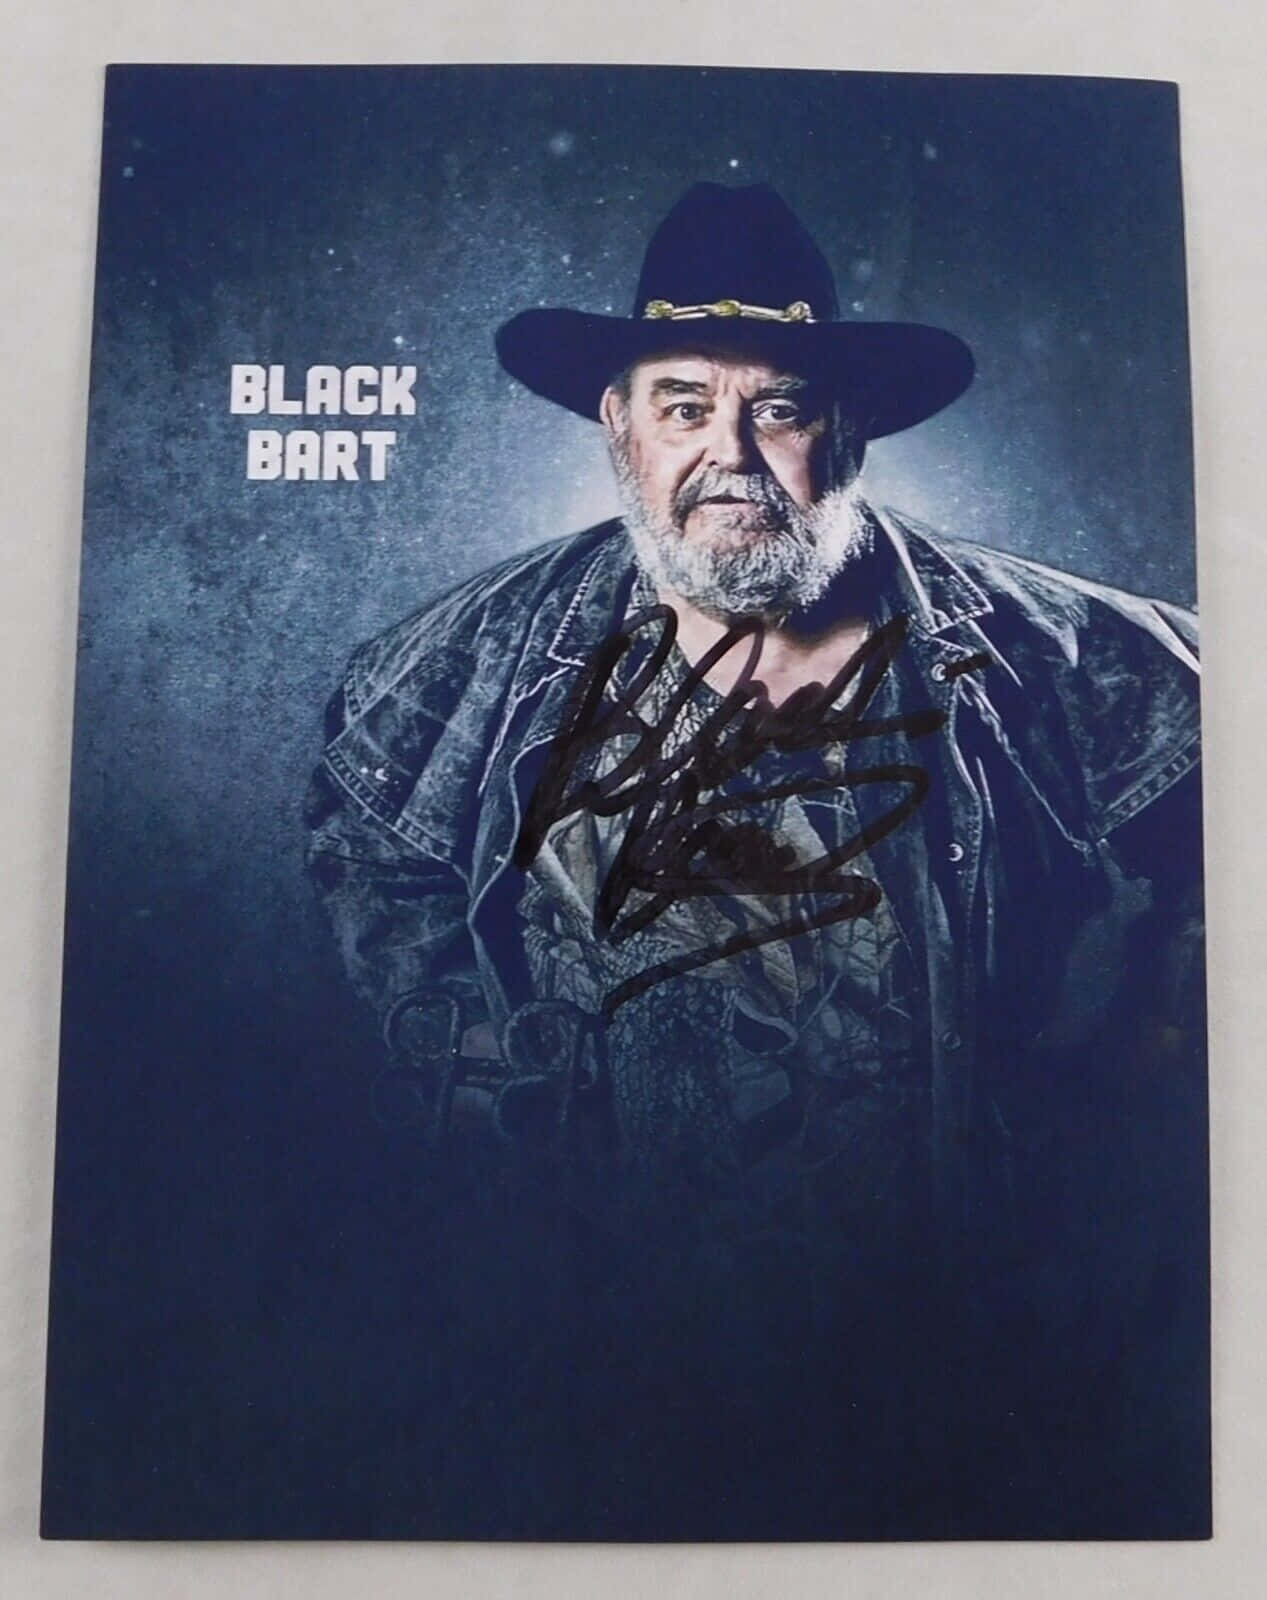 American Former Wrestler Black Bart Photograph Wallpaper